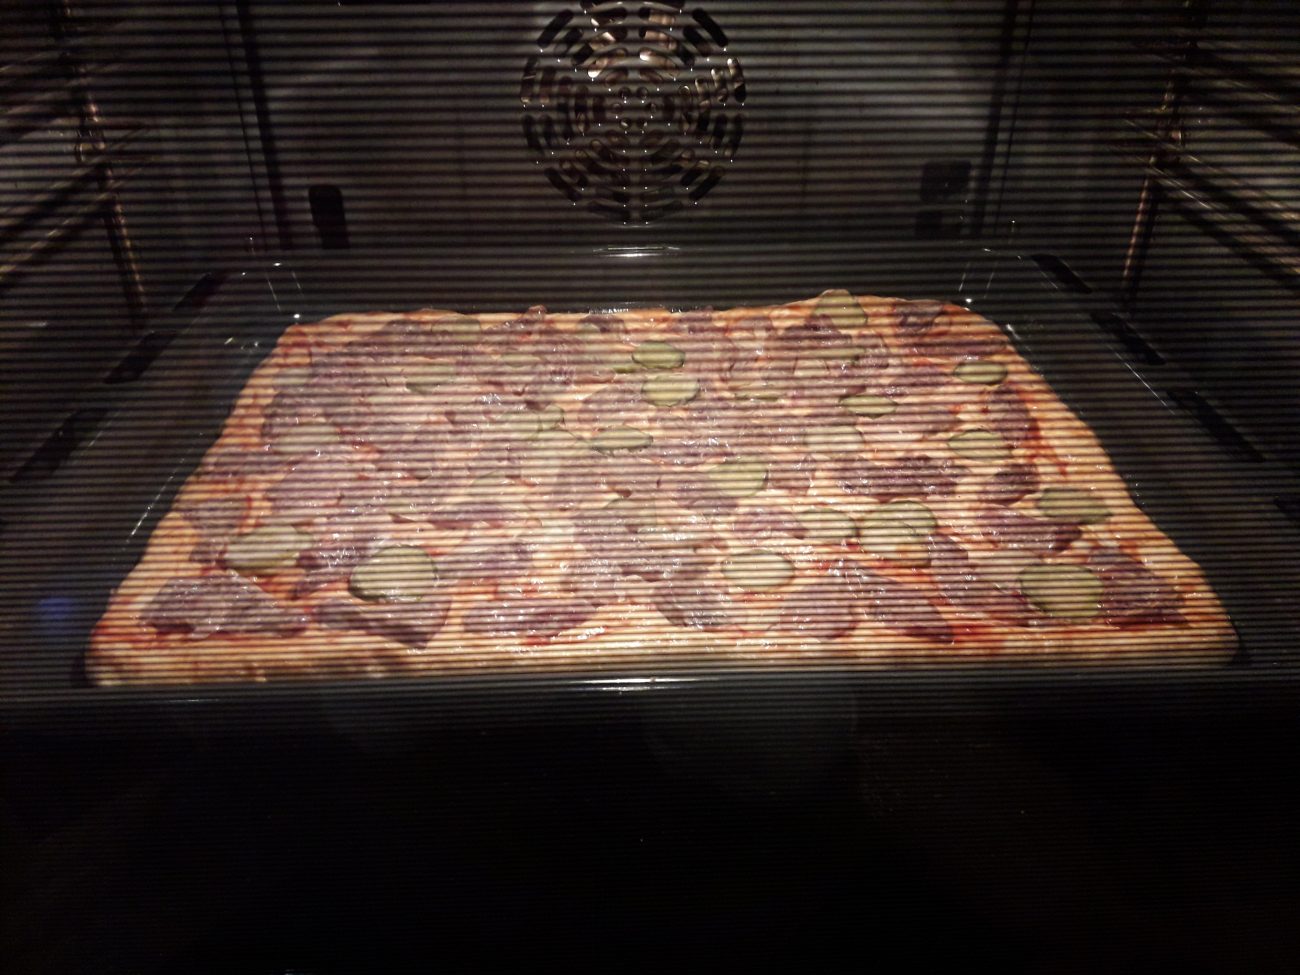 пицца в духовке как сделать чтобы не пригорала фото 102